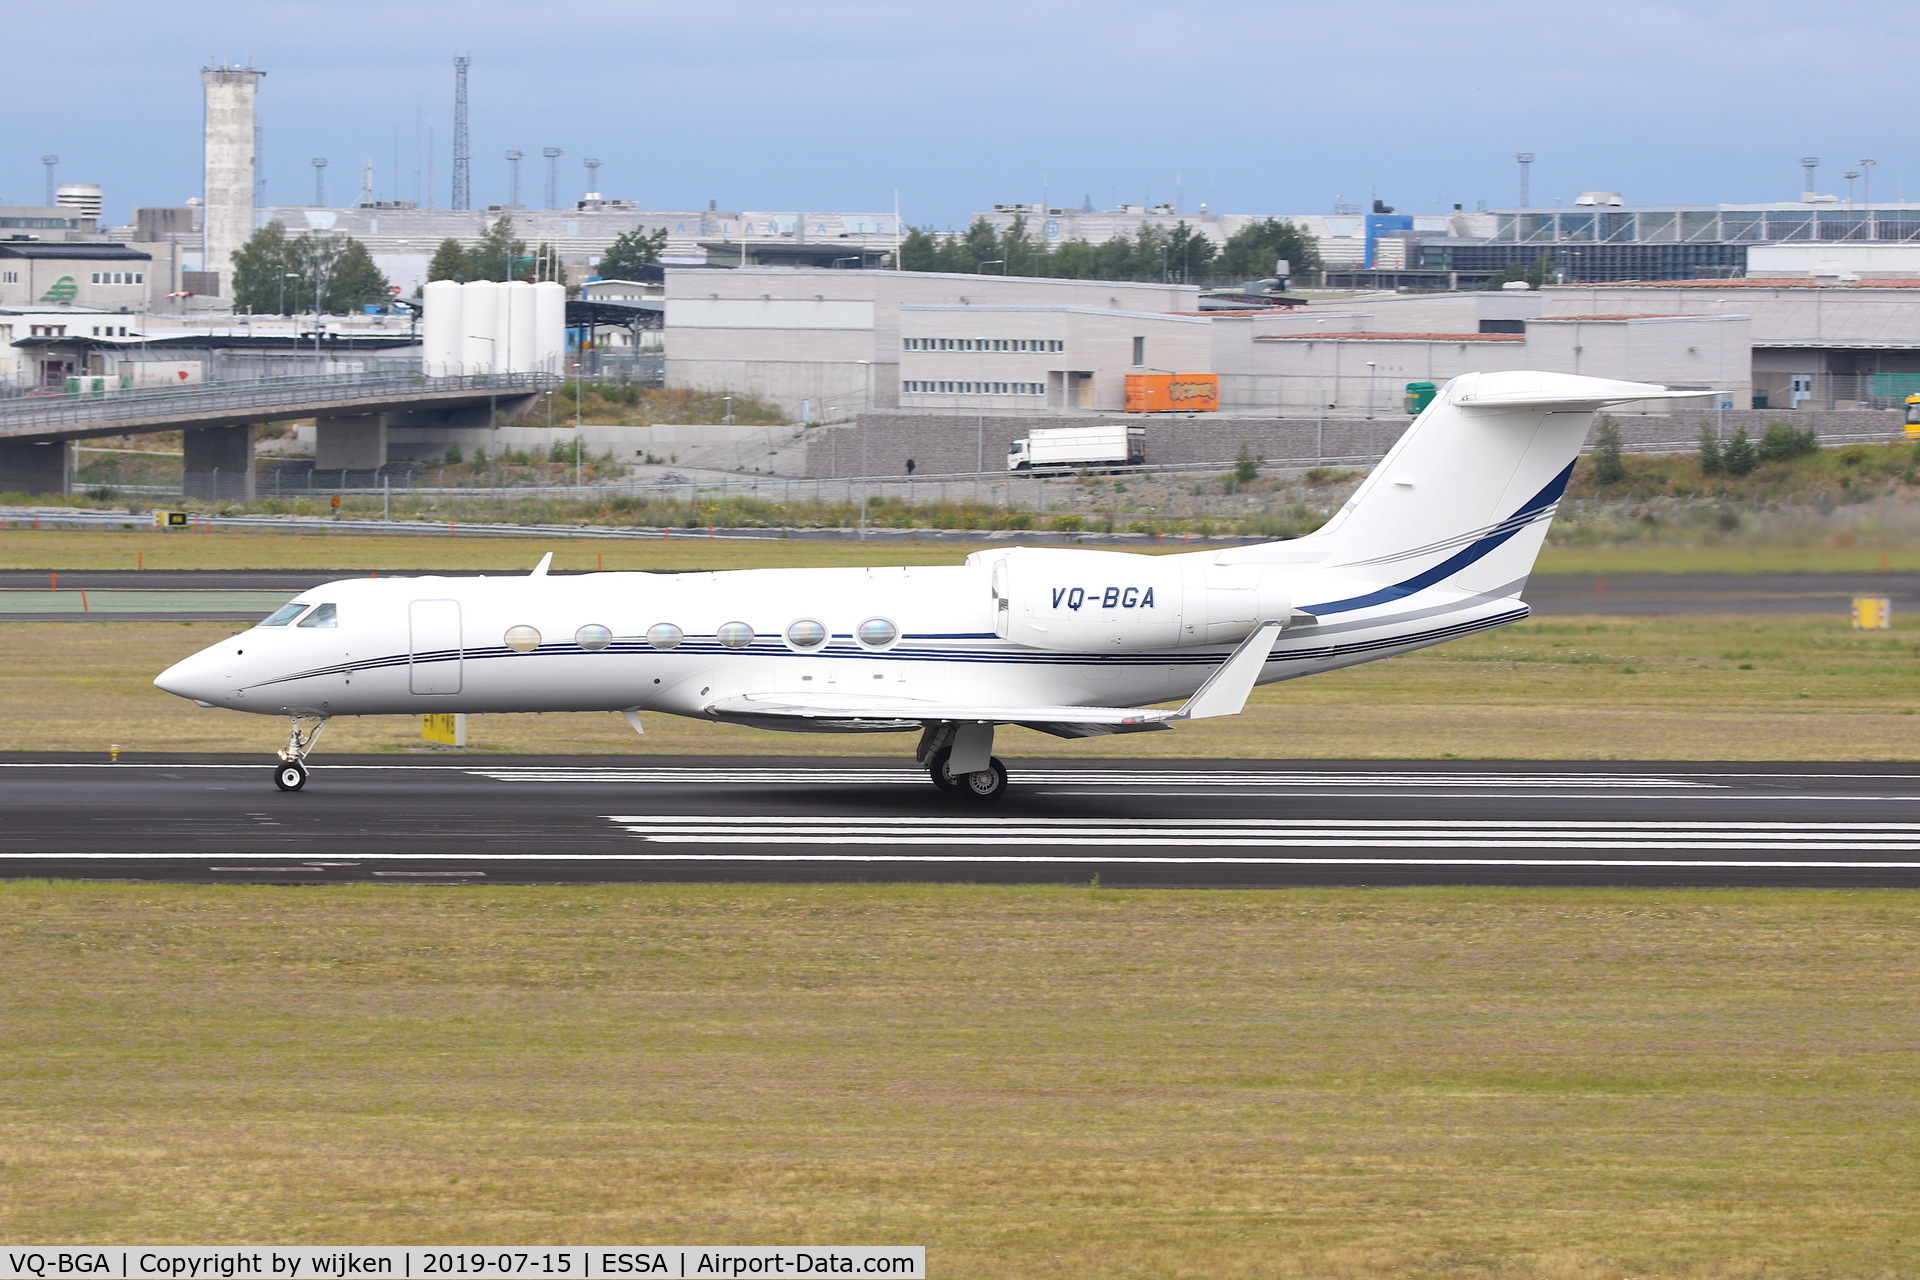 VQ-BGA, 2007 Gulfstream Aerospace GIV-X C/N 4092, RWY 19L